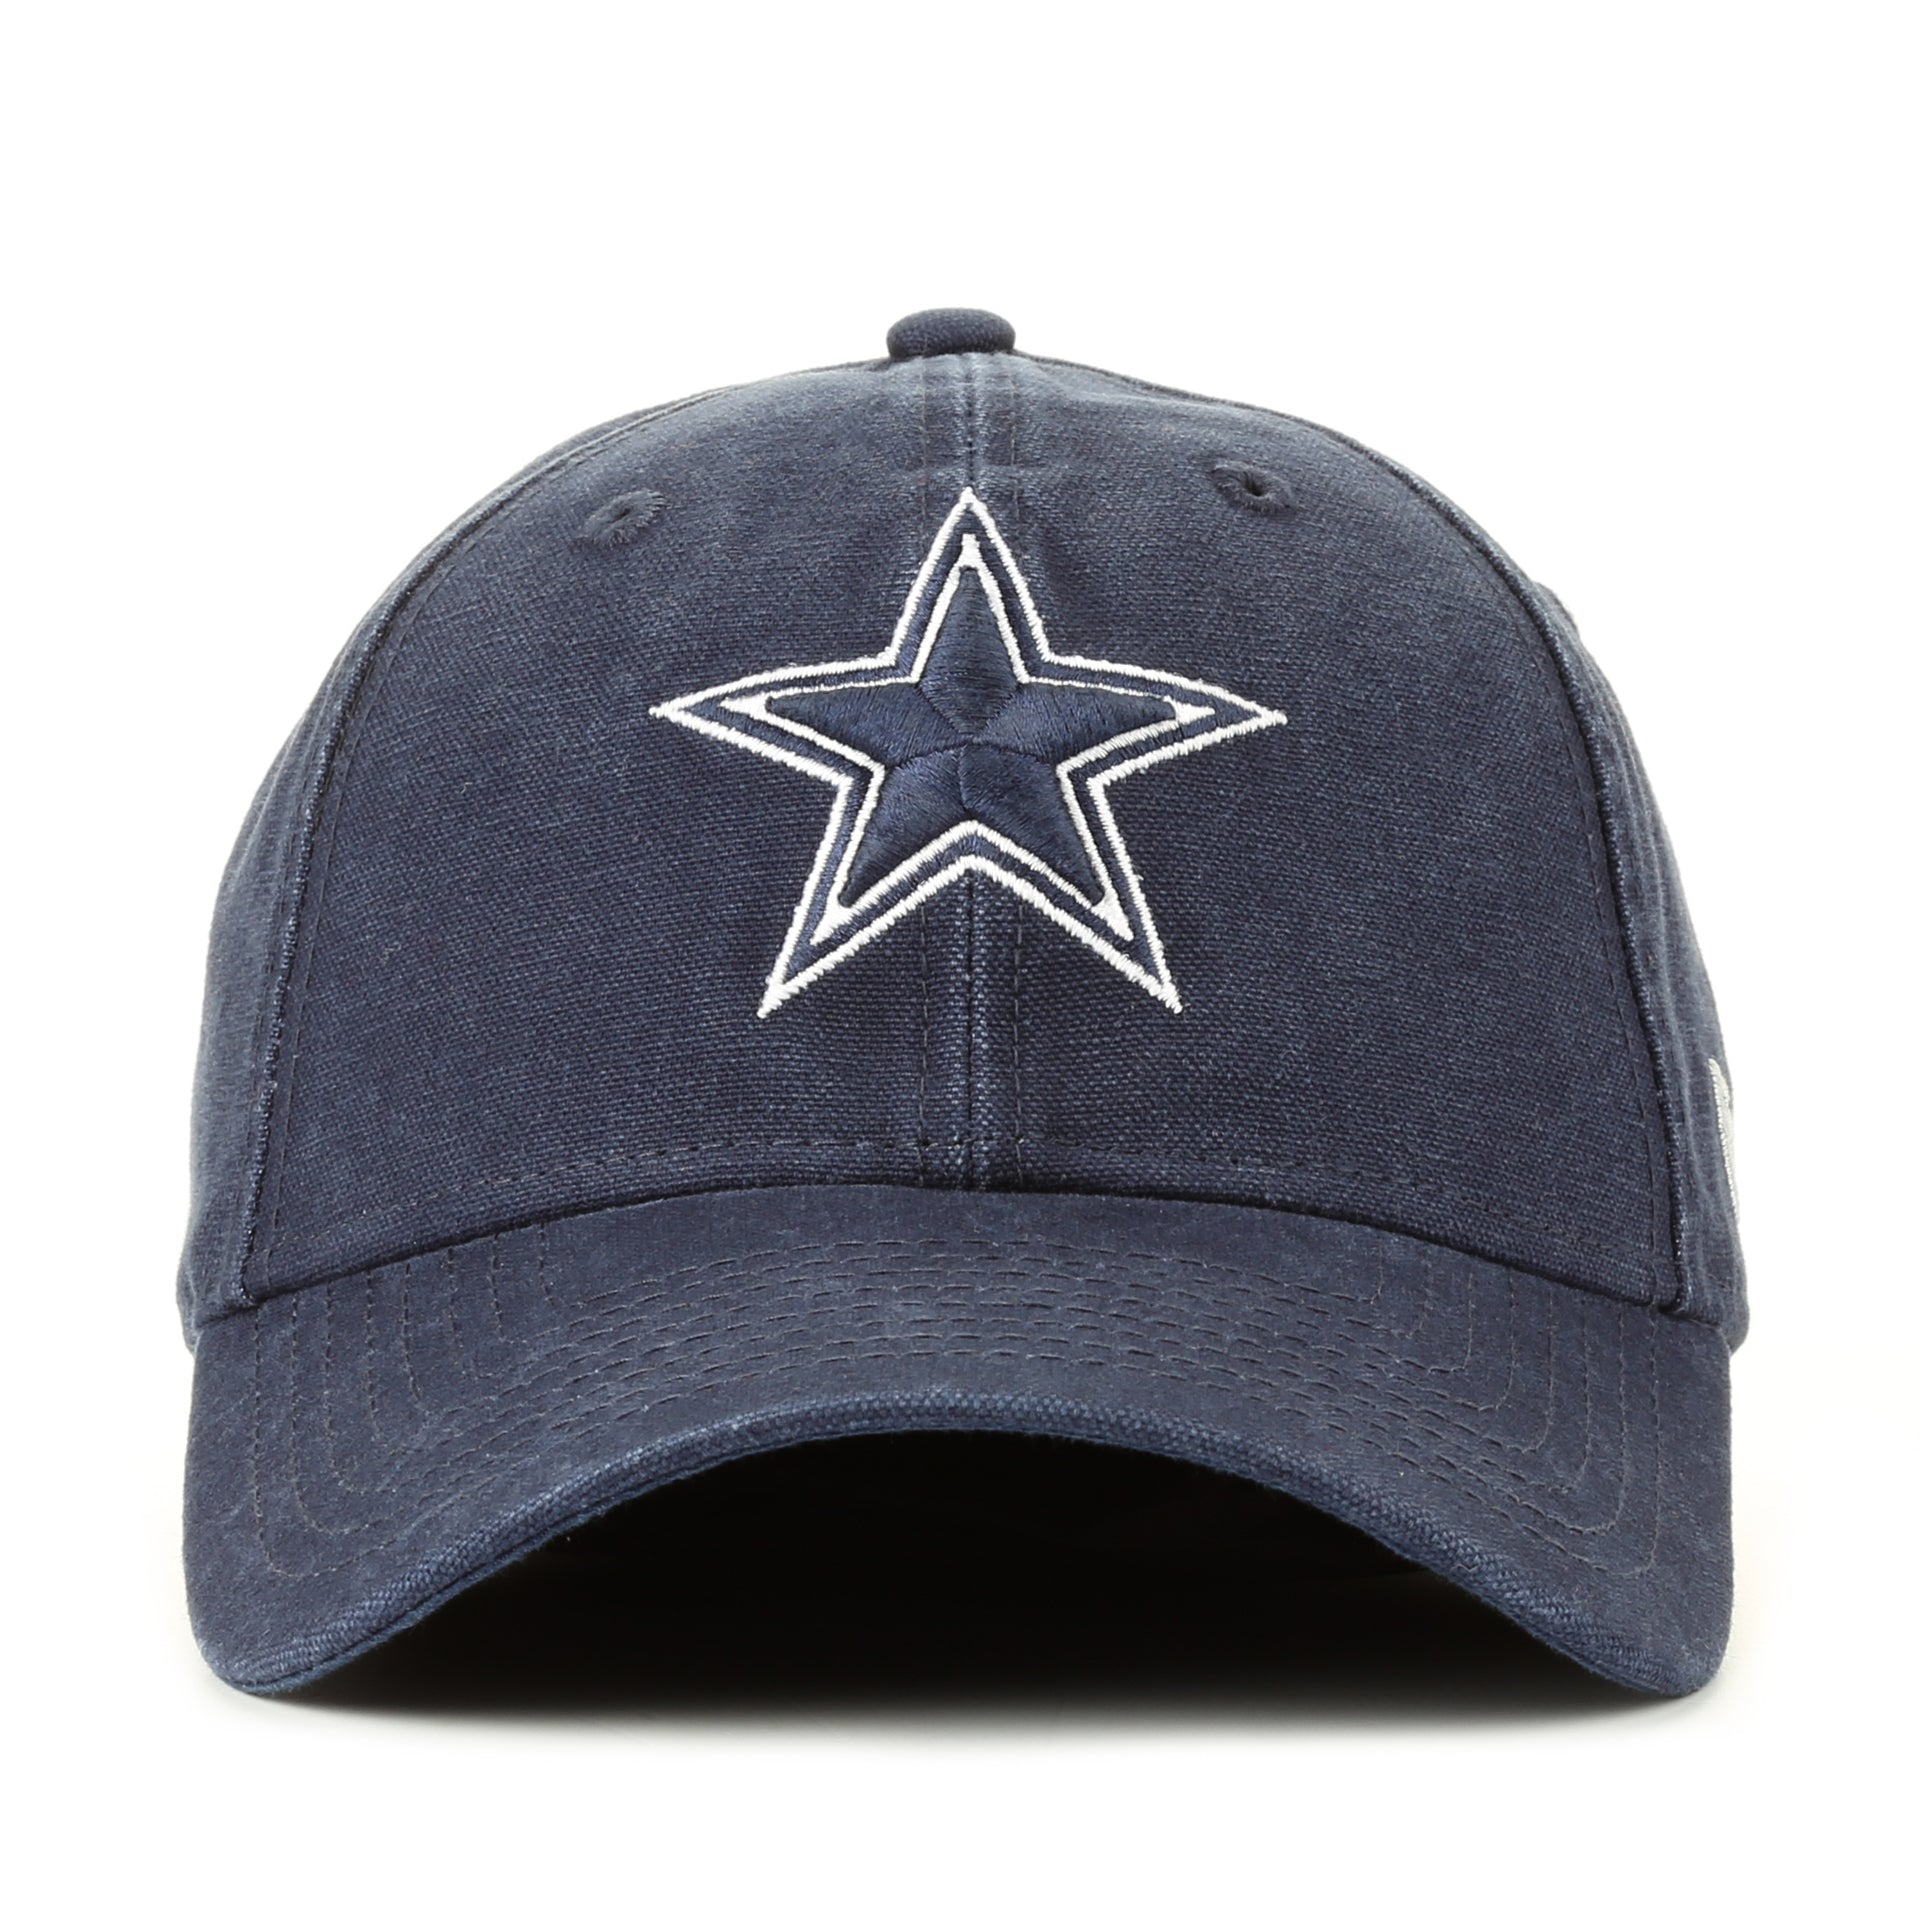 New Era 9Twenty Core Classic Cap - Dallas Cowboys/Navy - New Star